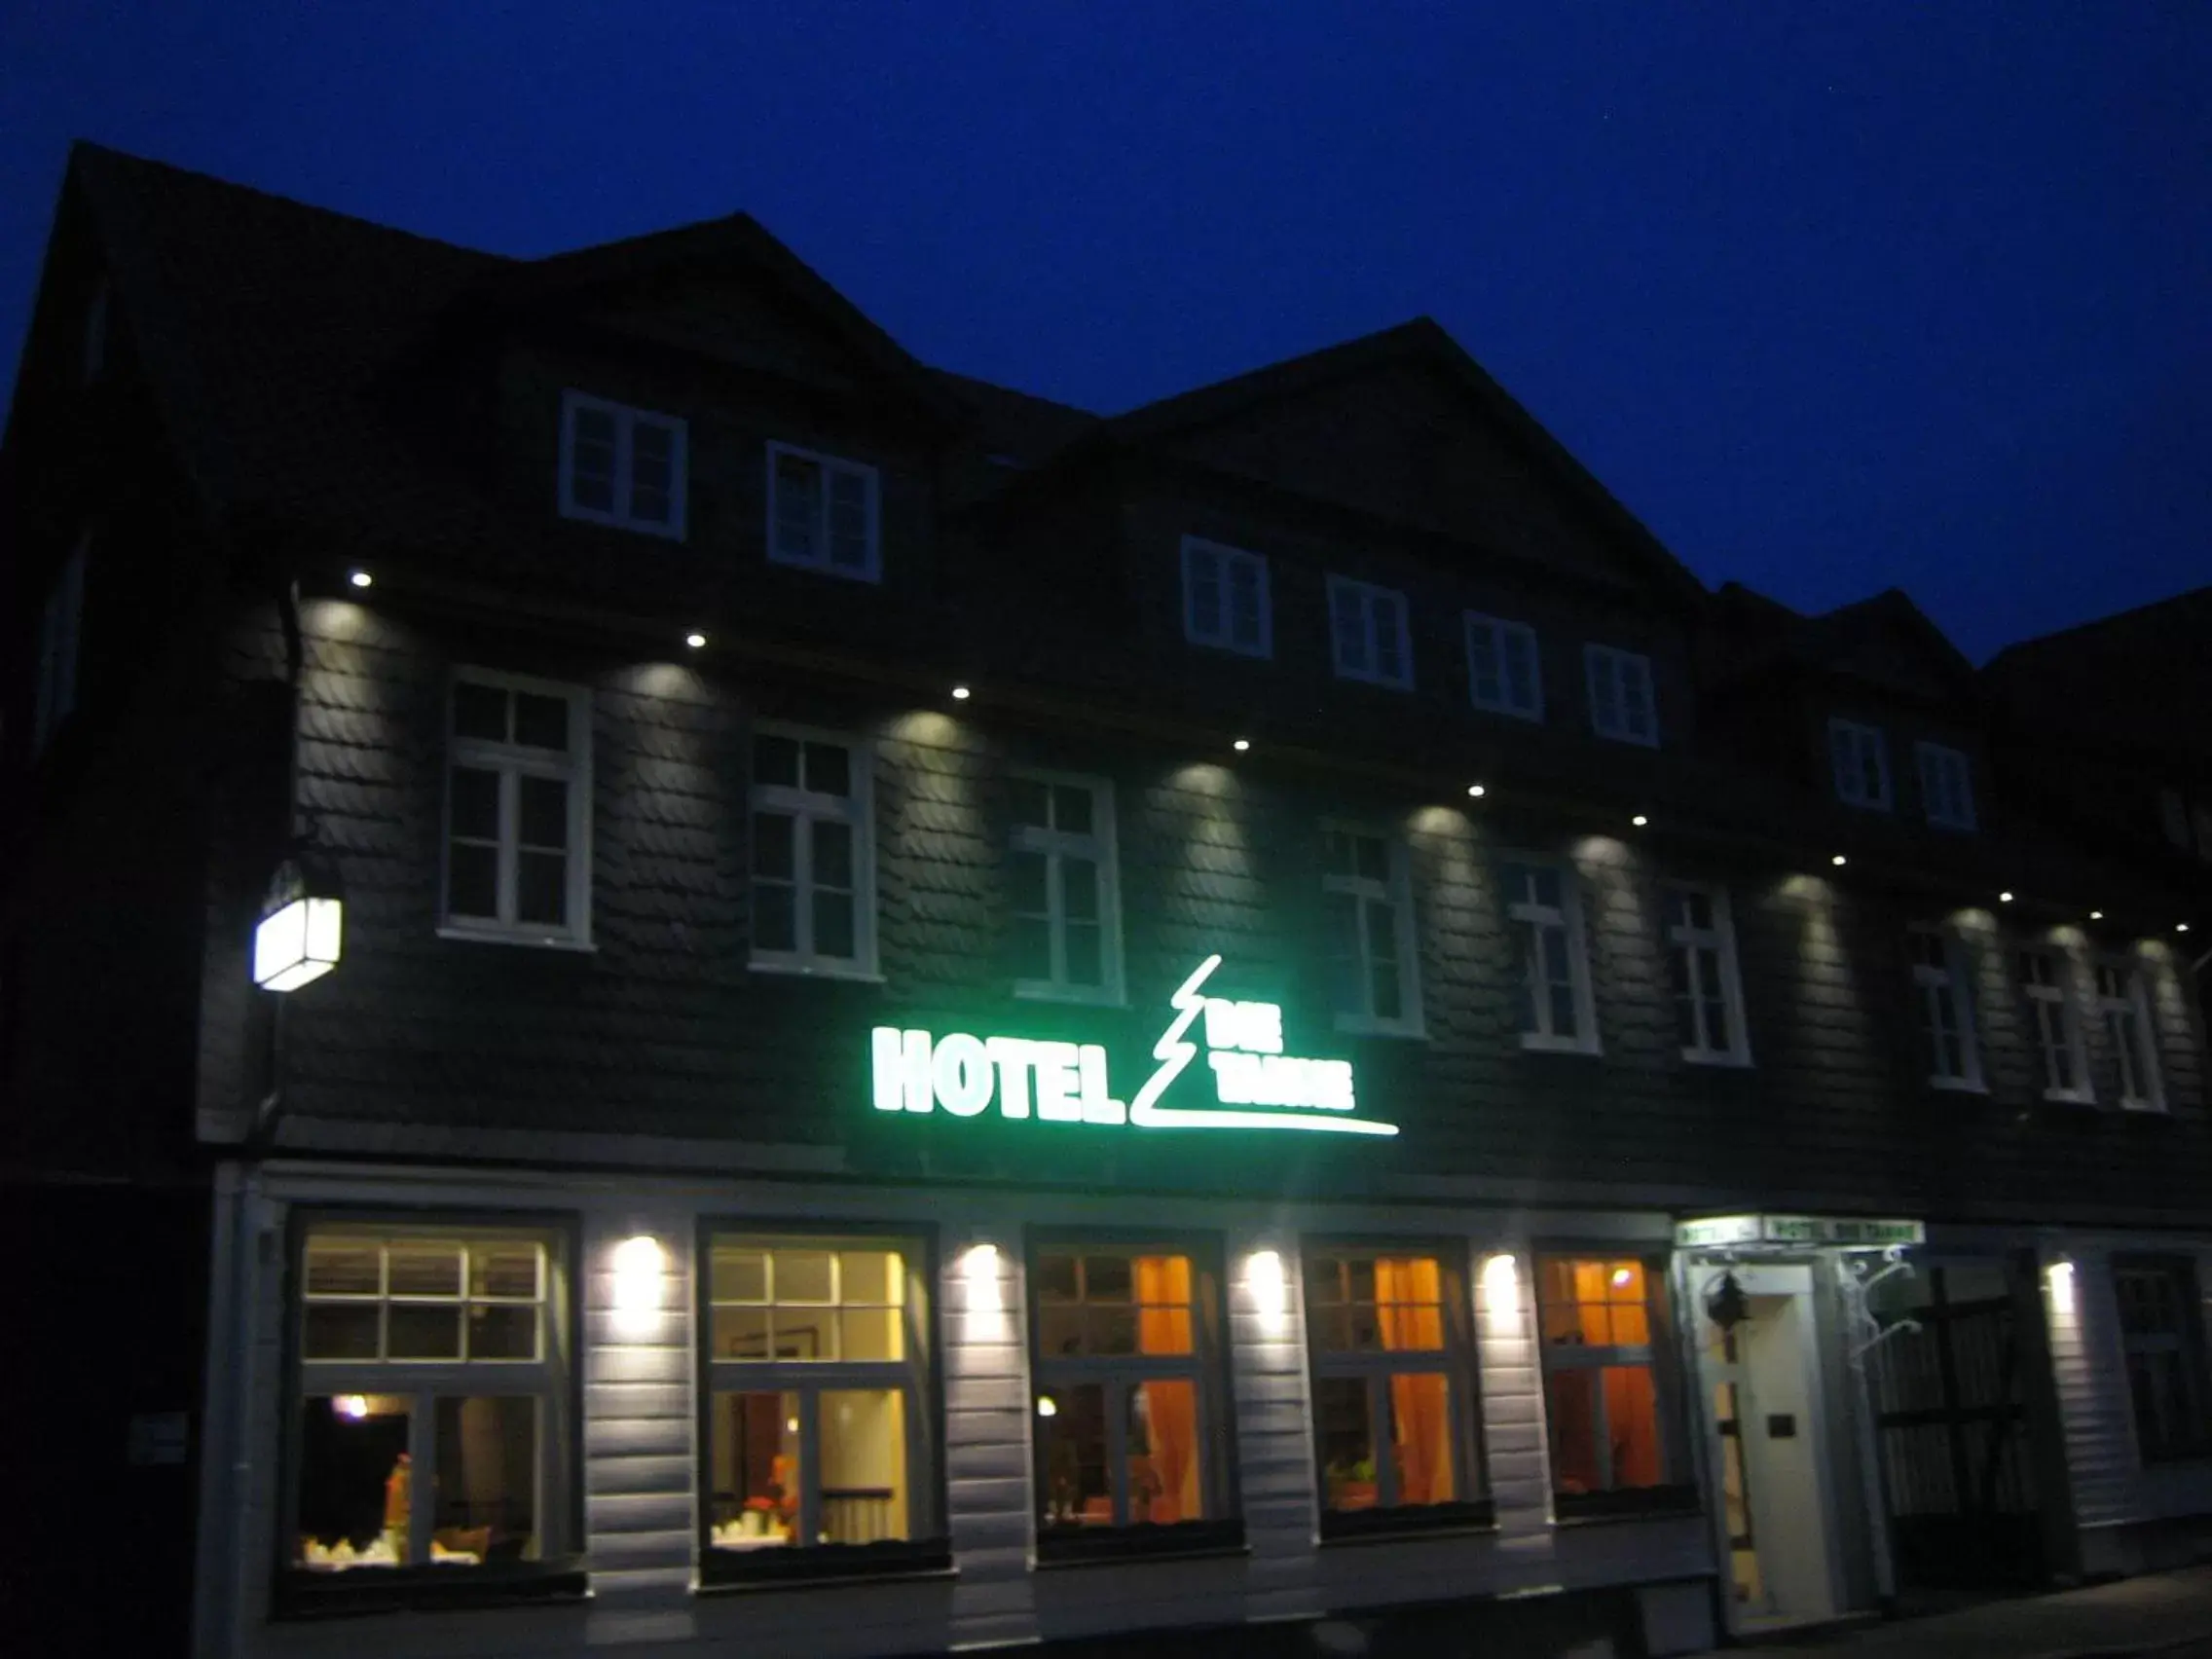 Property Building in Hotel Die Tanne